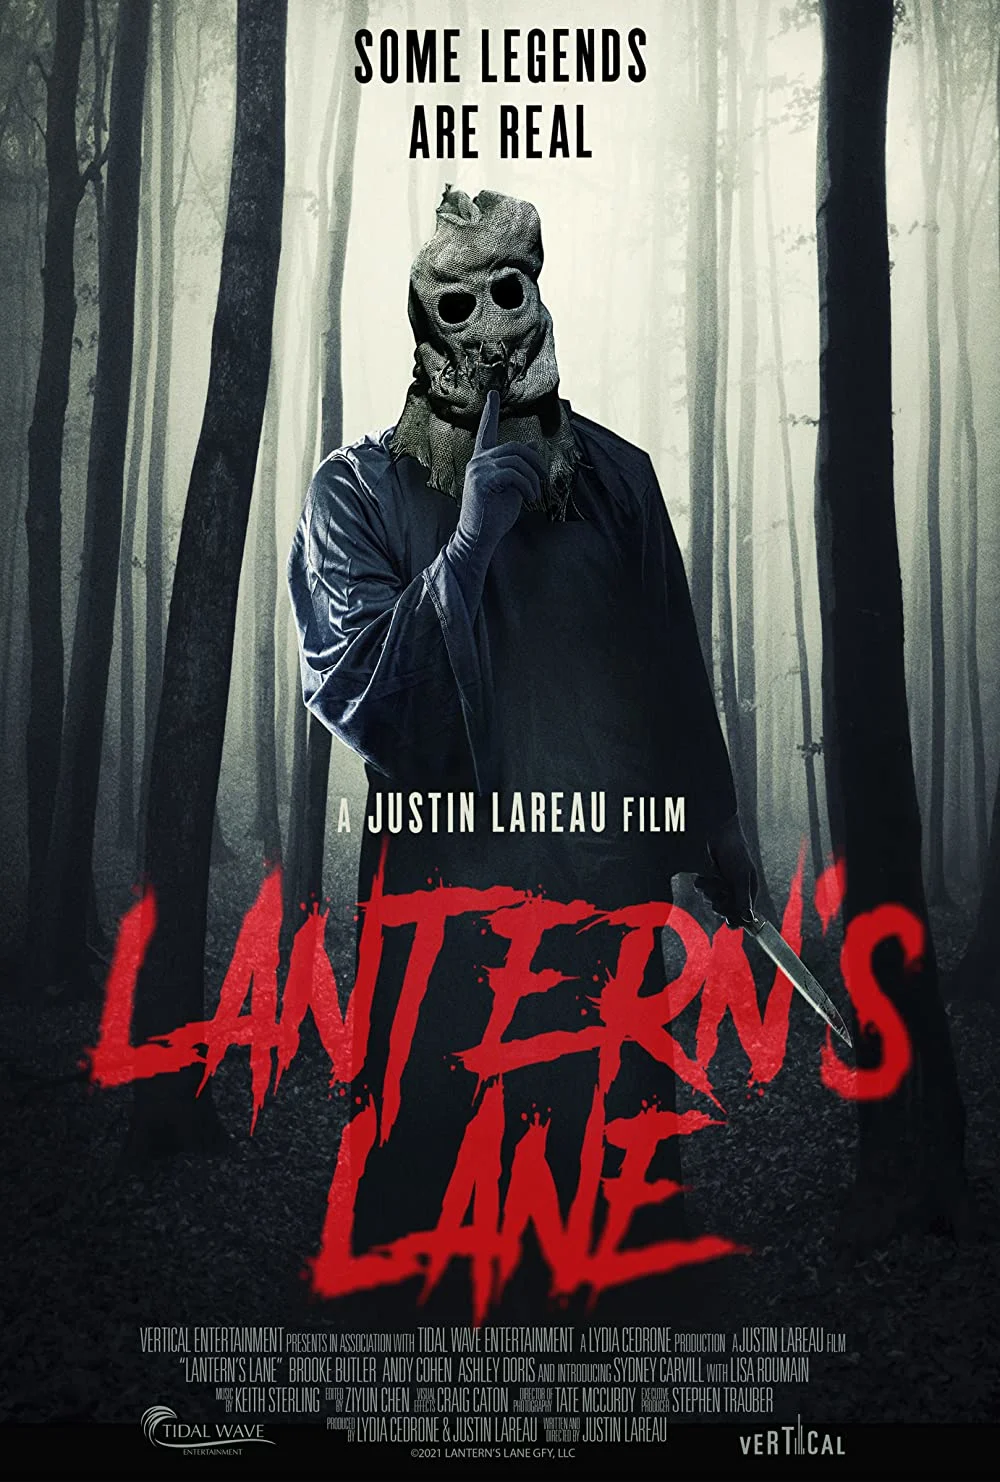 Lantern’s Lane (DVD) on MovieShack